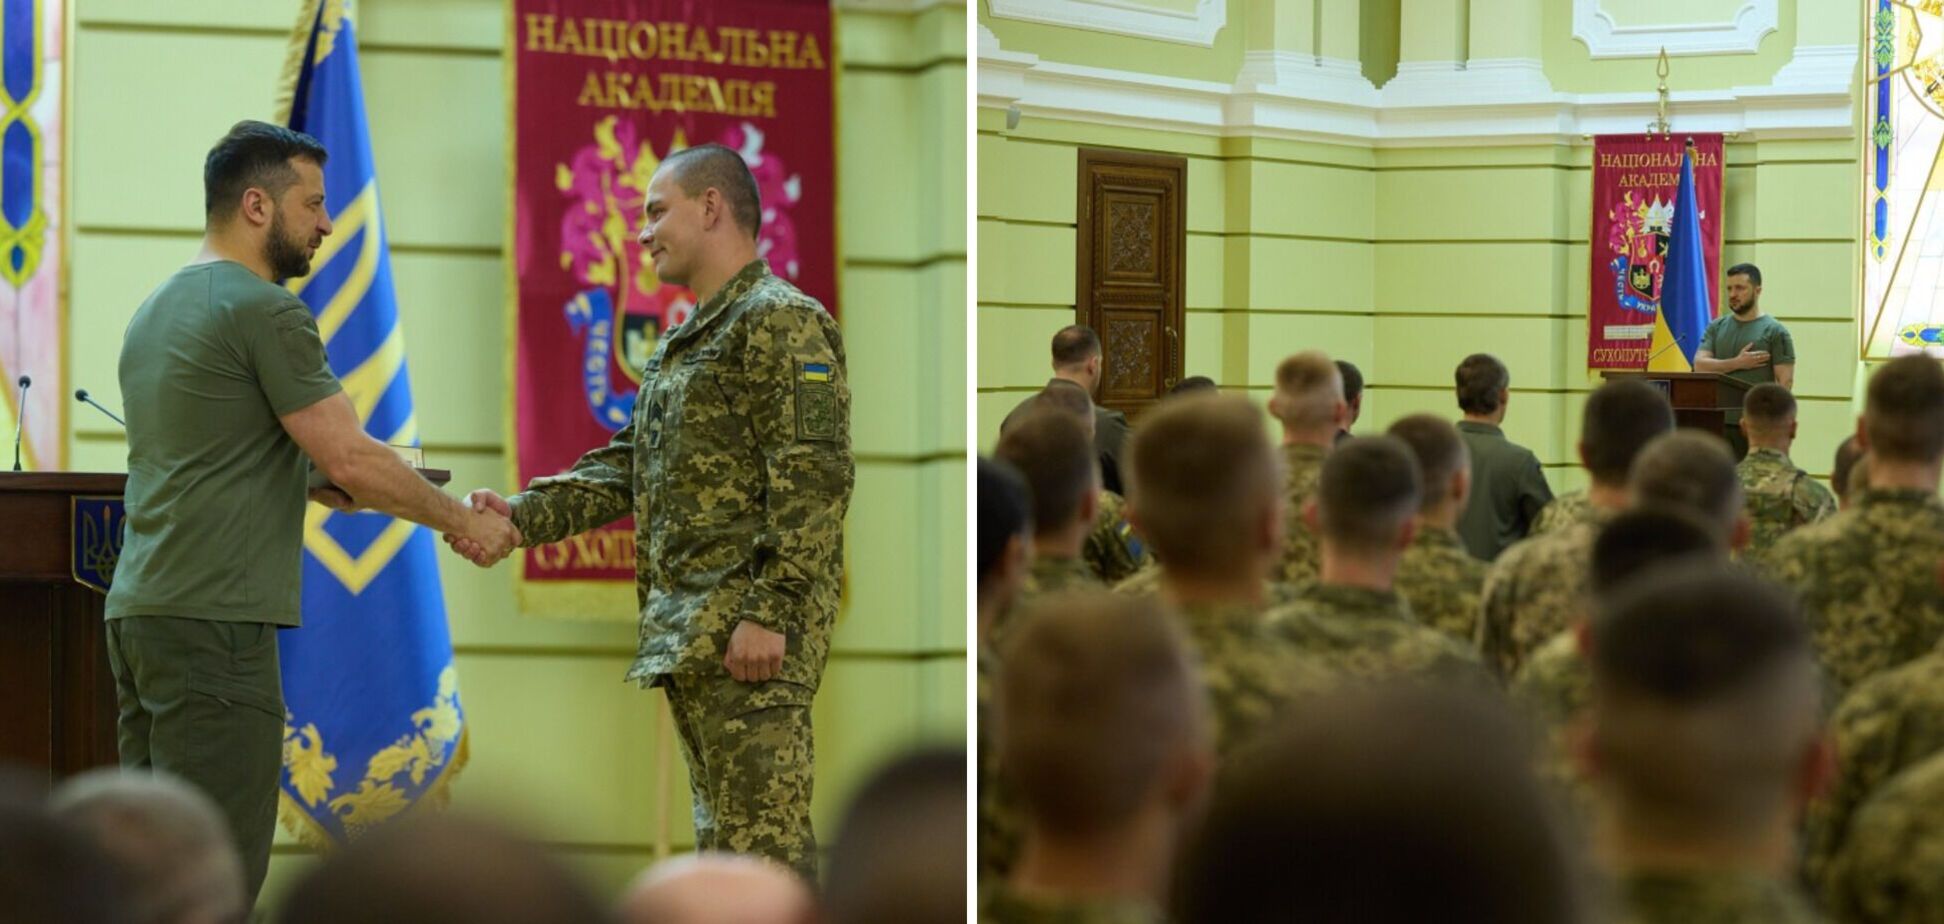 Зеленский встретился с курсантами Национальной академии Сухопутных войск во Львове и вручил награды военным. Видео